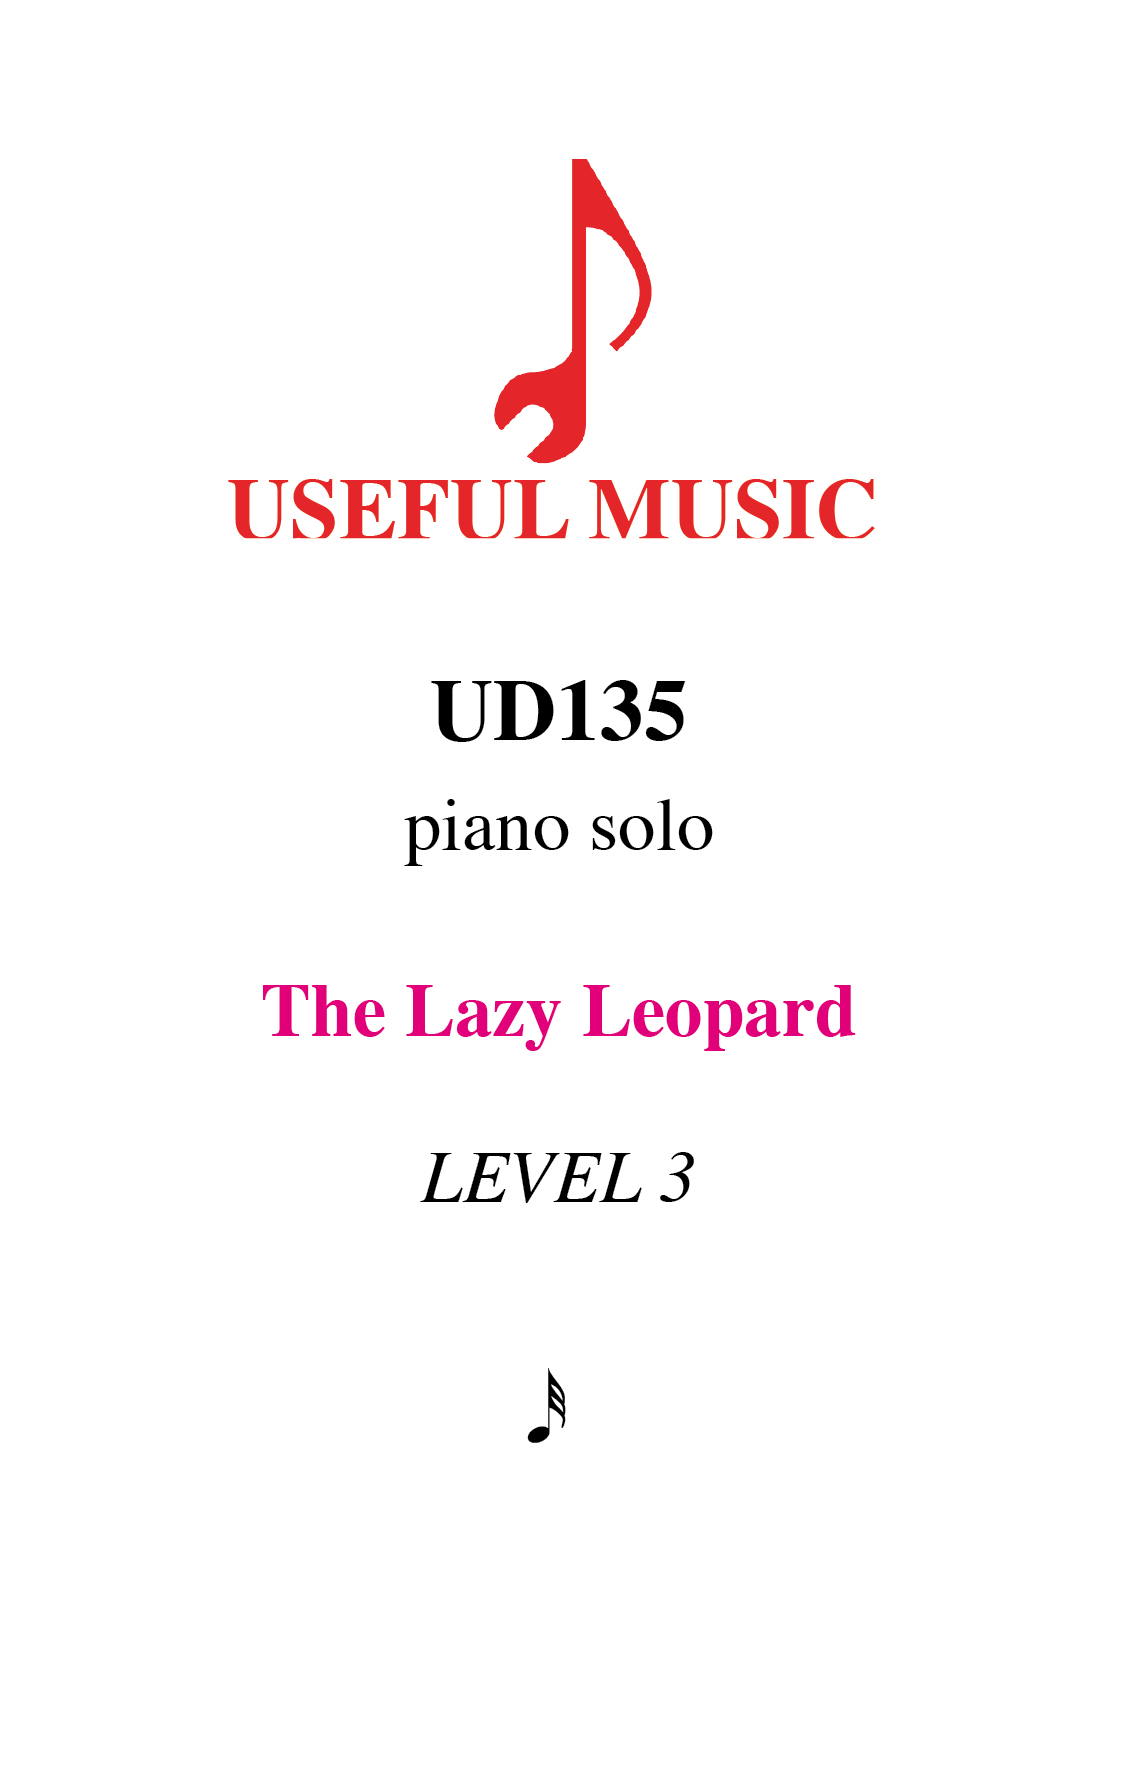 The Lazy Leopard – piano solo